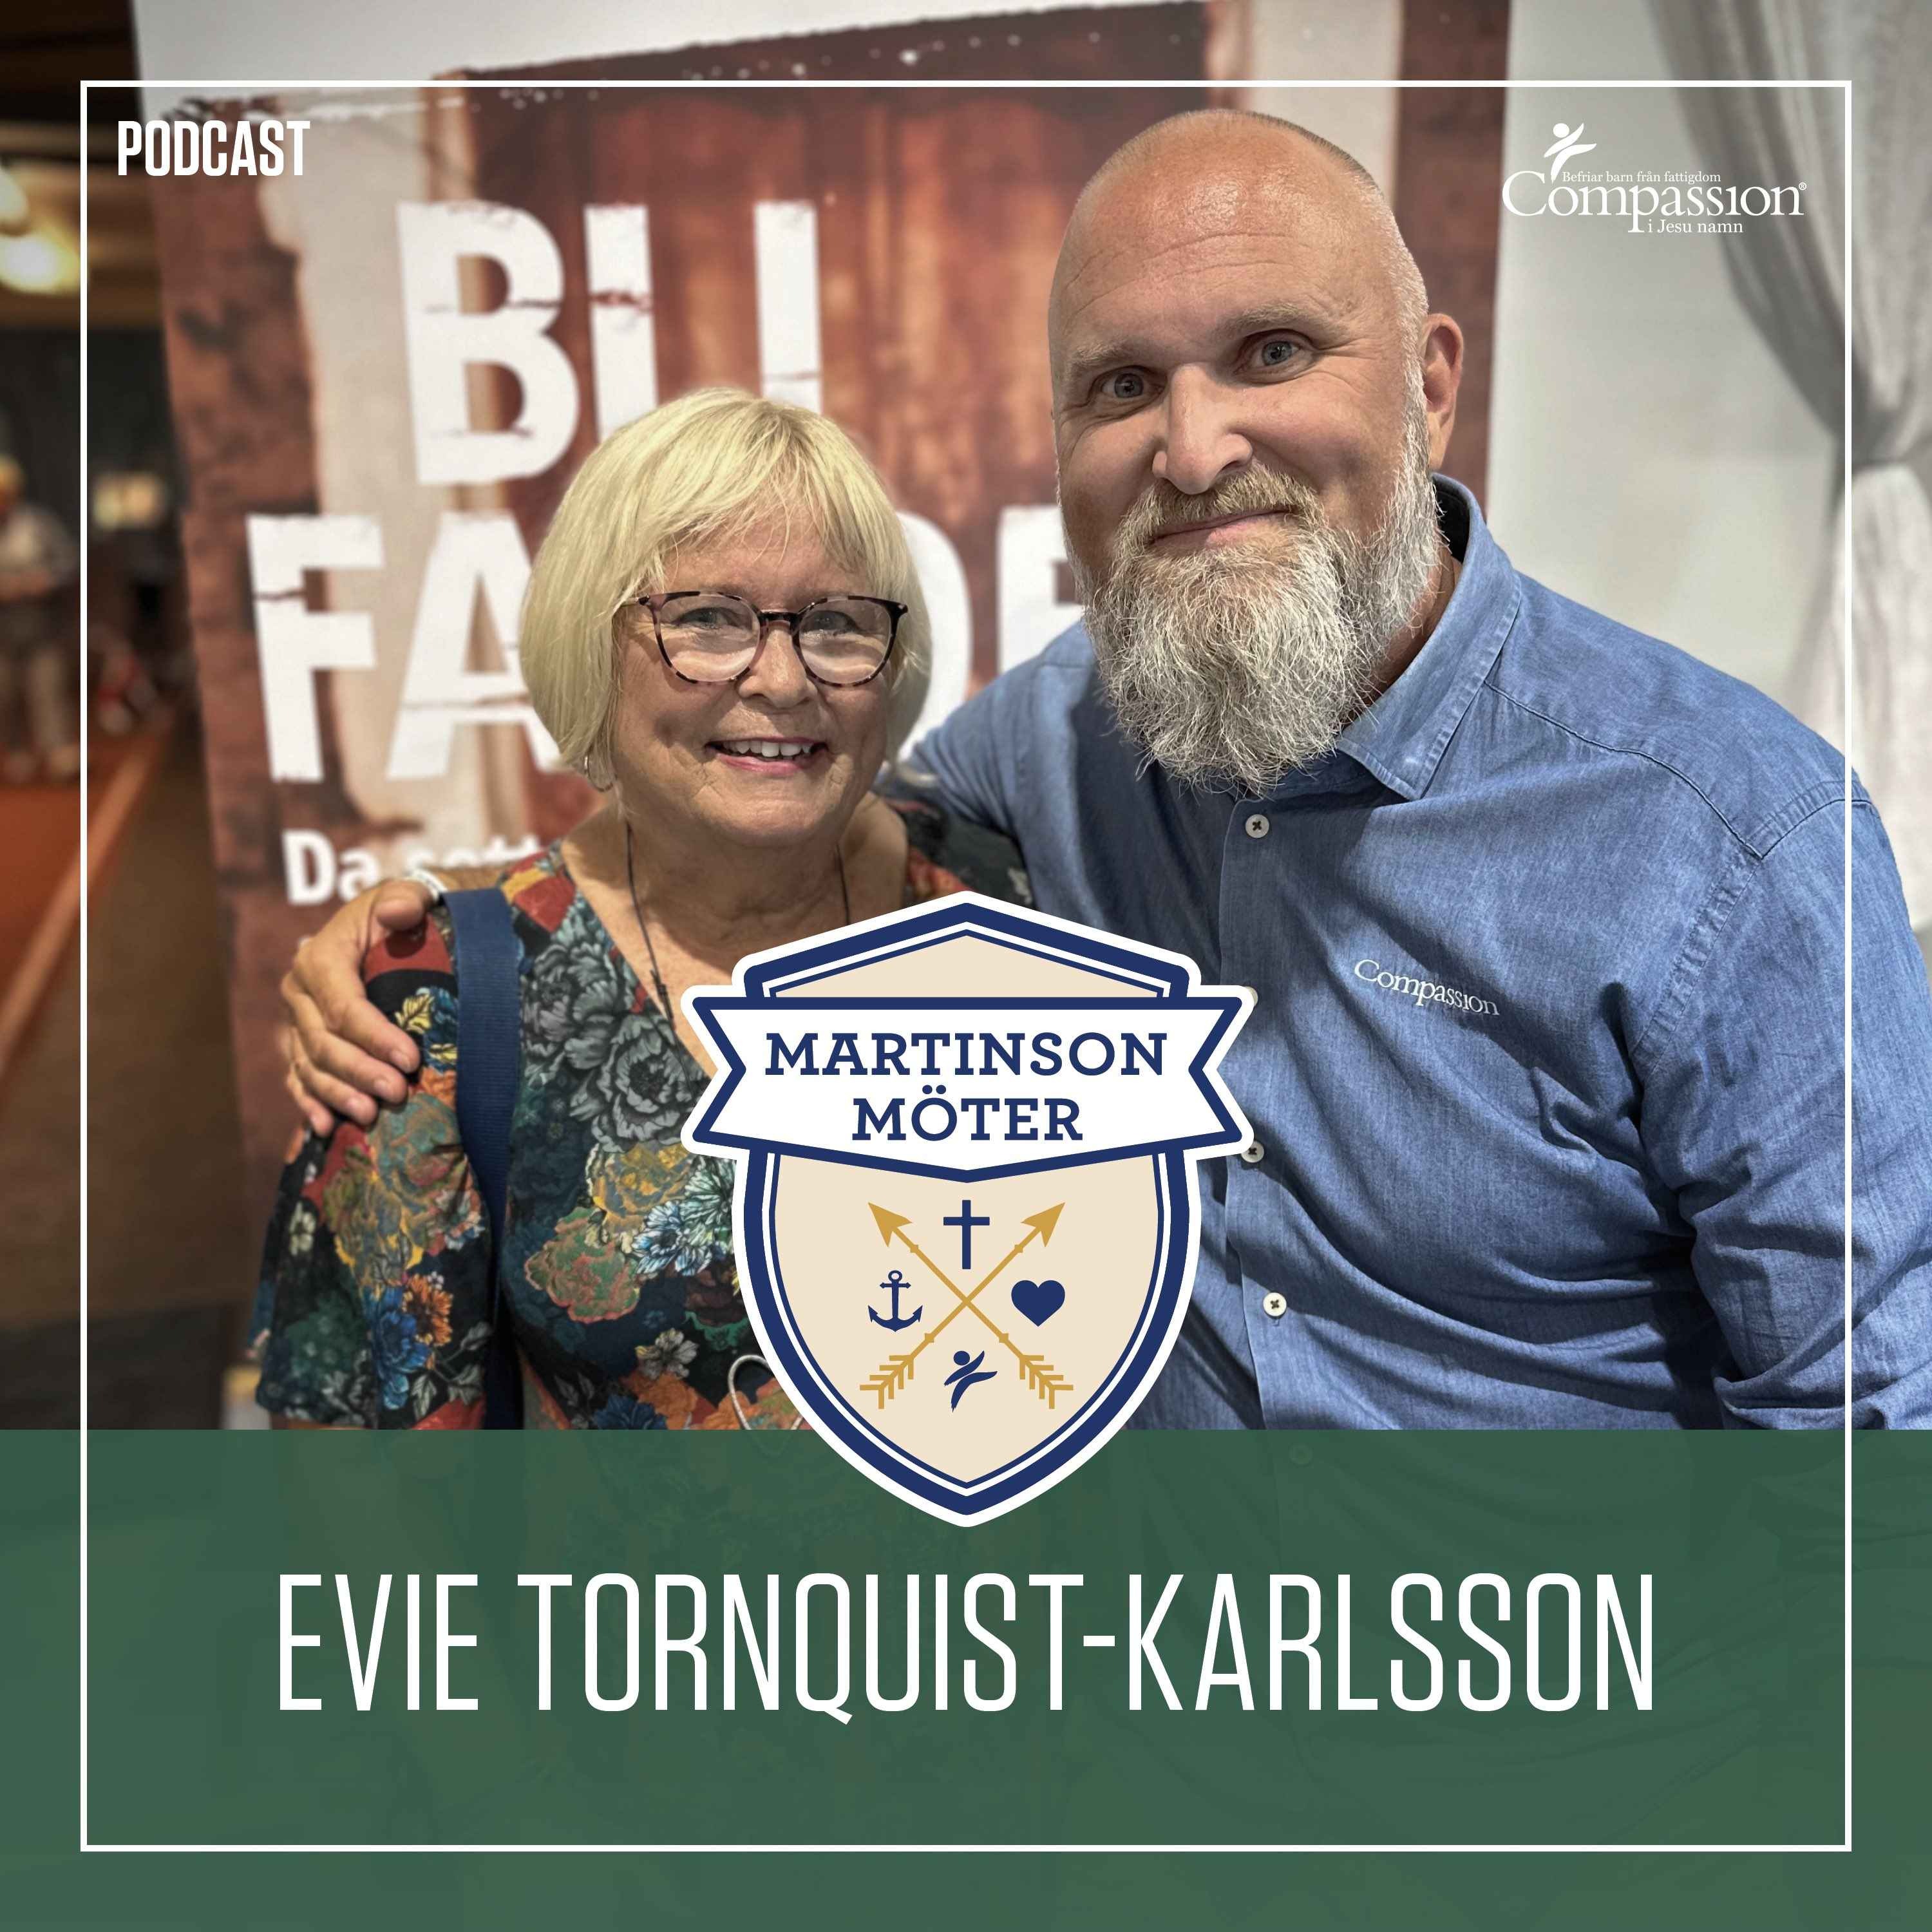 Evie Törnqvist-Karlsson